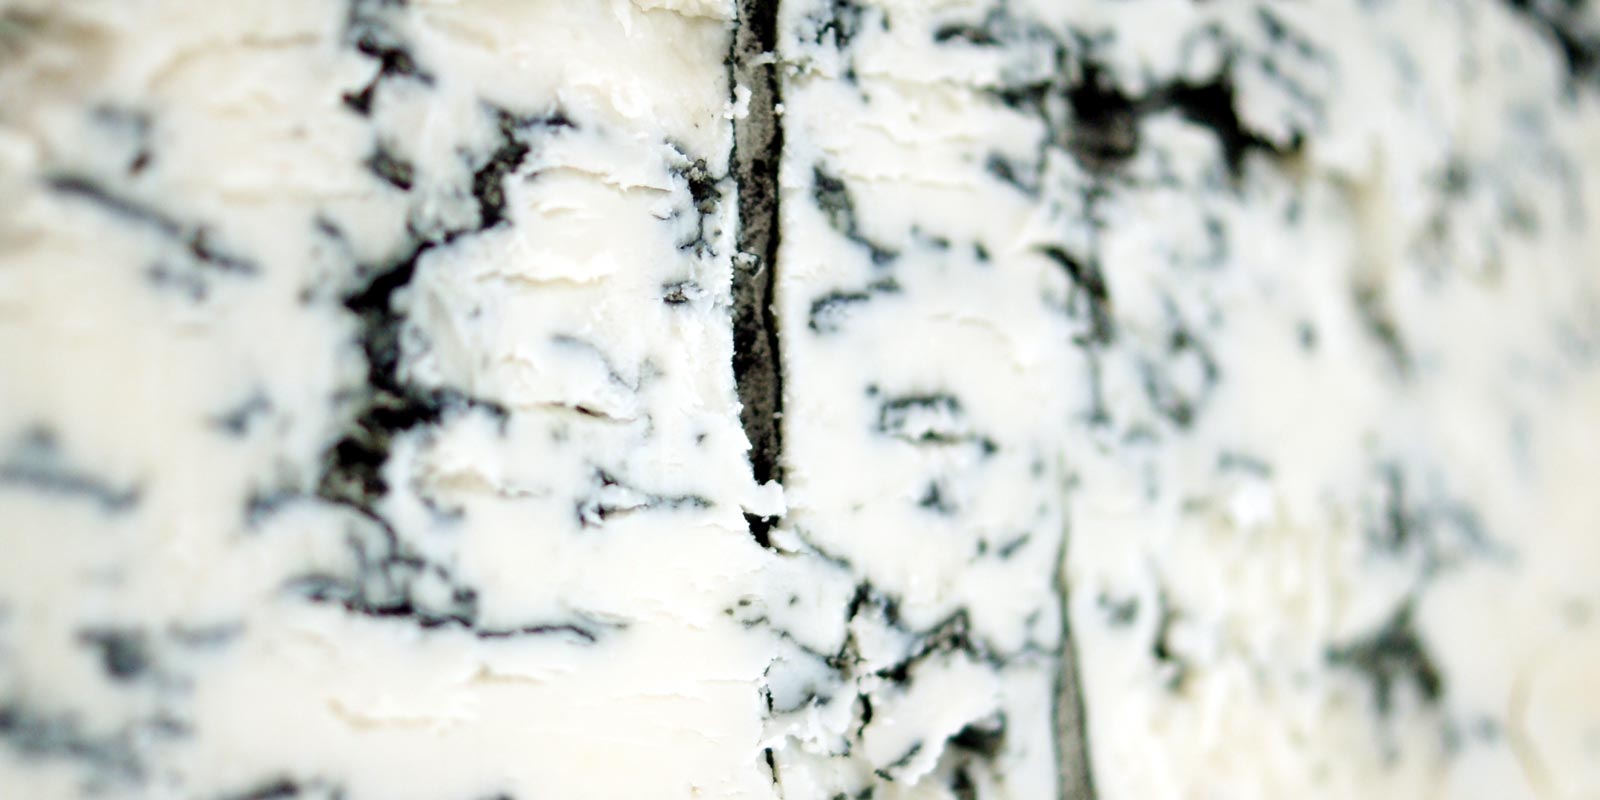 Pehmea juusto, puhveli ricotta, puolikova juusto Taalta loydat erilaisia pehmeita juustoja. Olipa kyseessa herkullinen puhvelinmaito-ricotta tai pitkakypsytetty sinihomejuusto. Makuhermosi viihtyvat taalla.